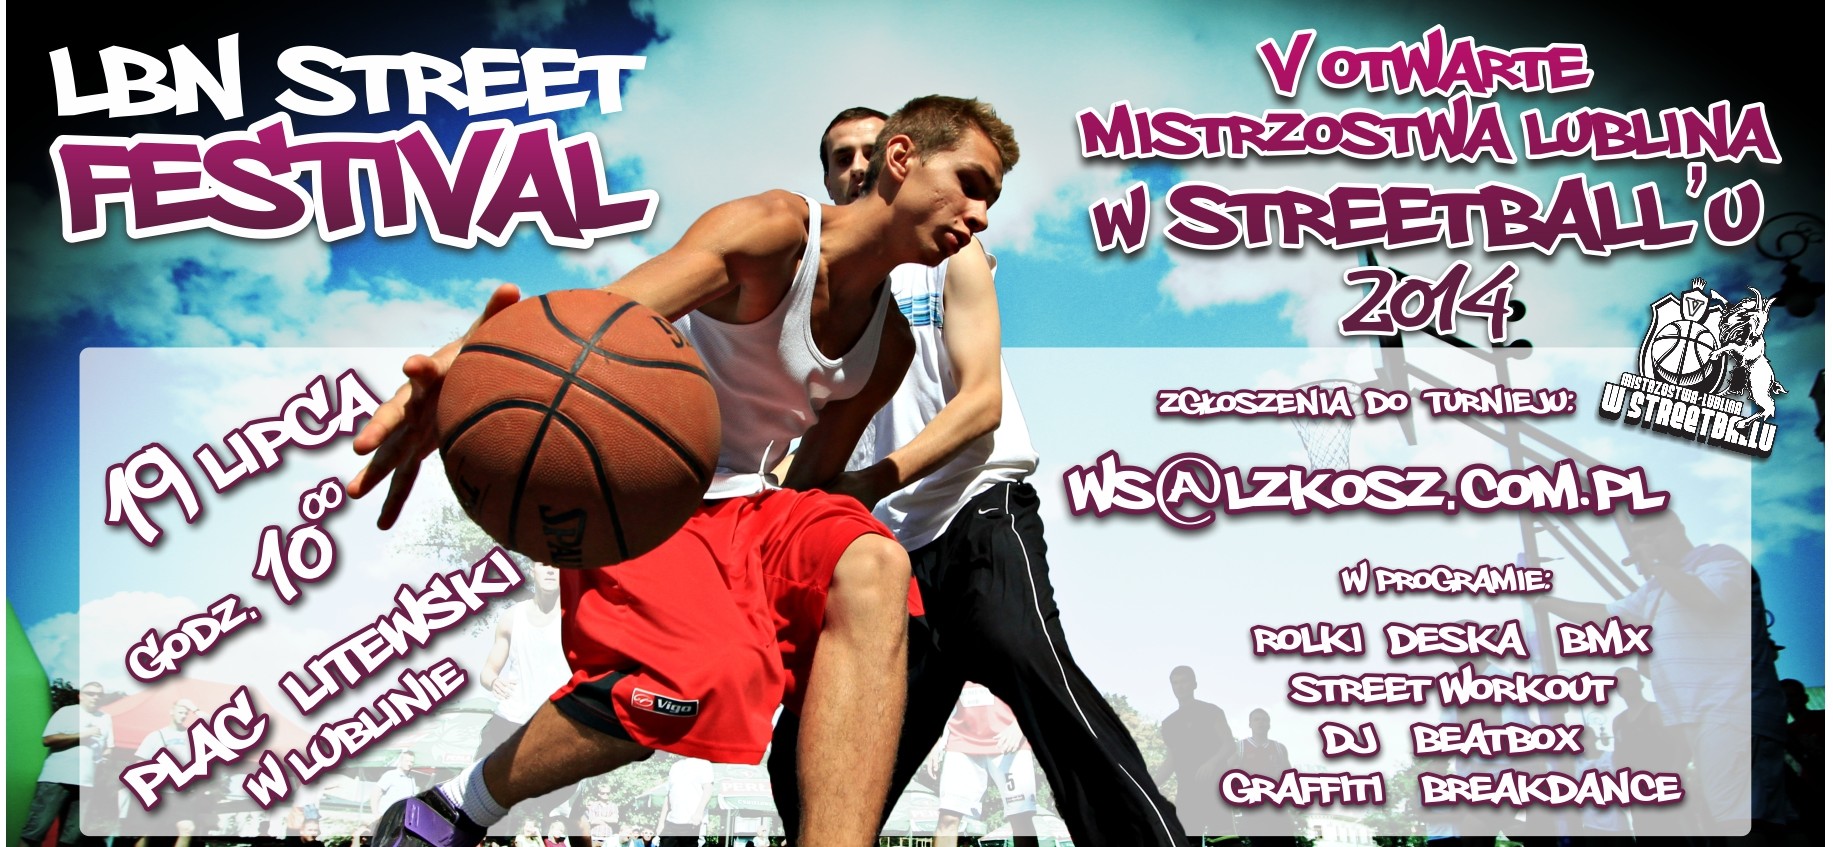 streetball2014 e1404982818846